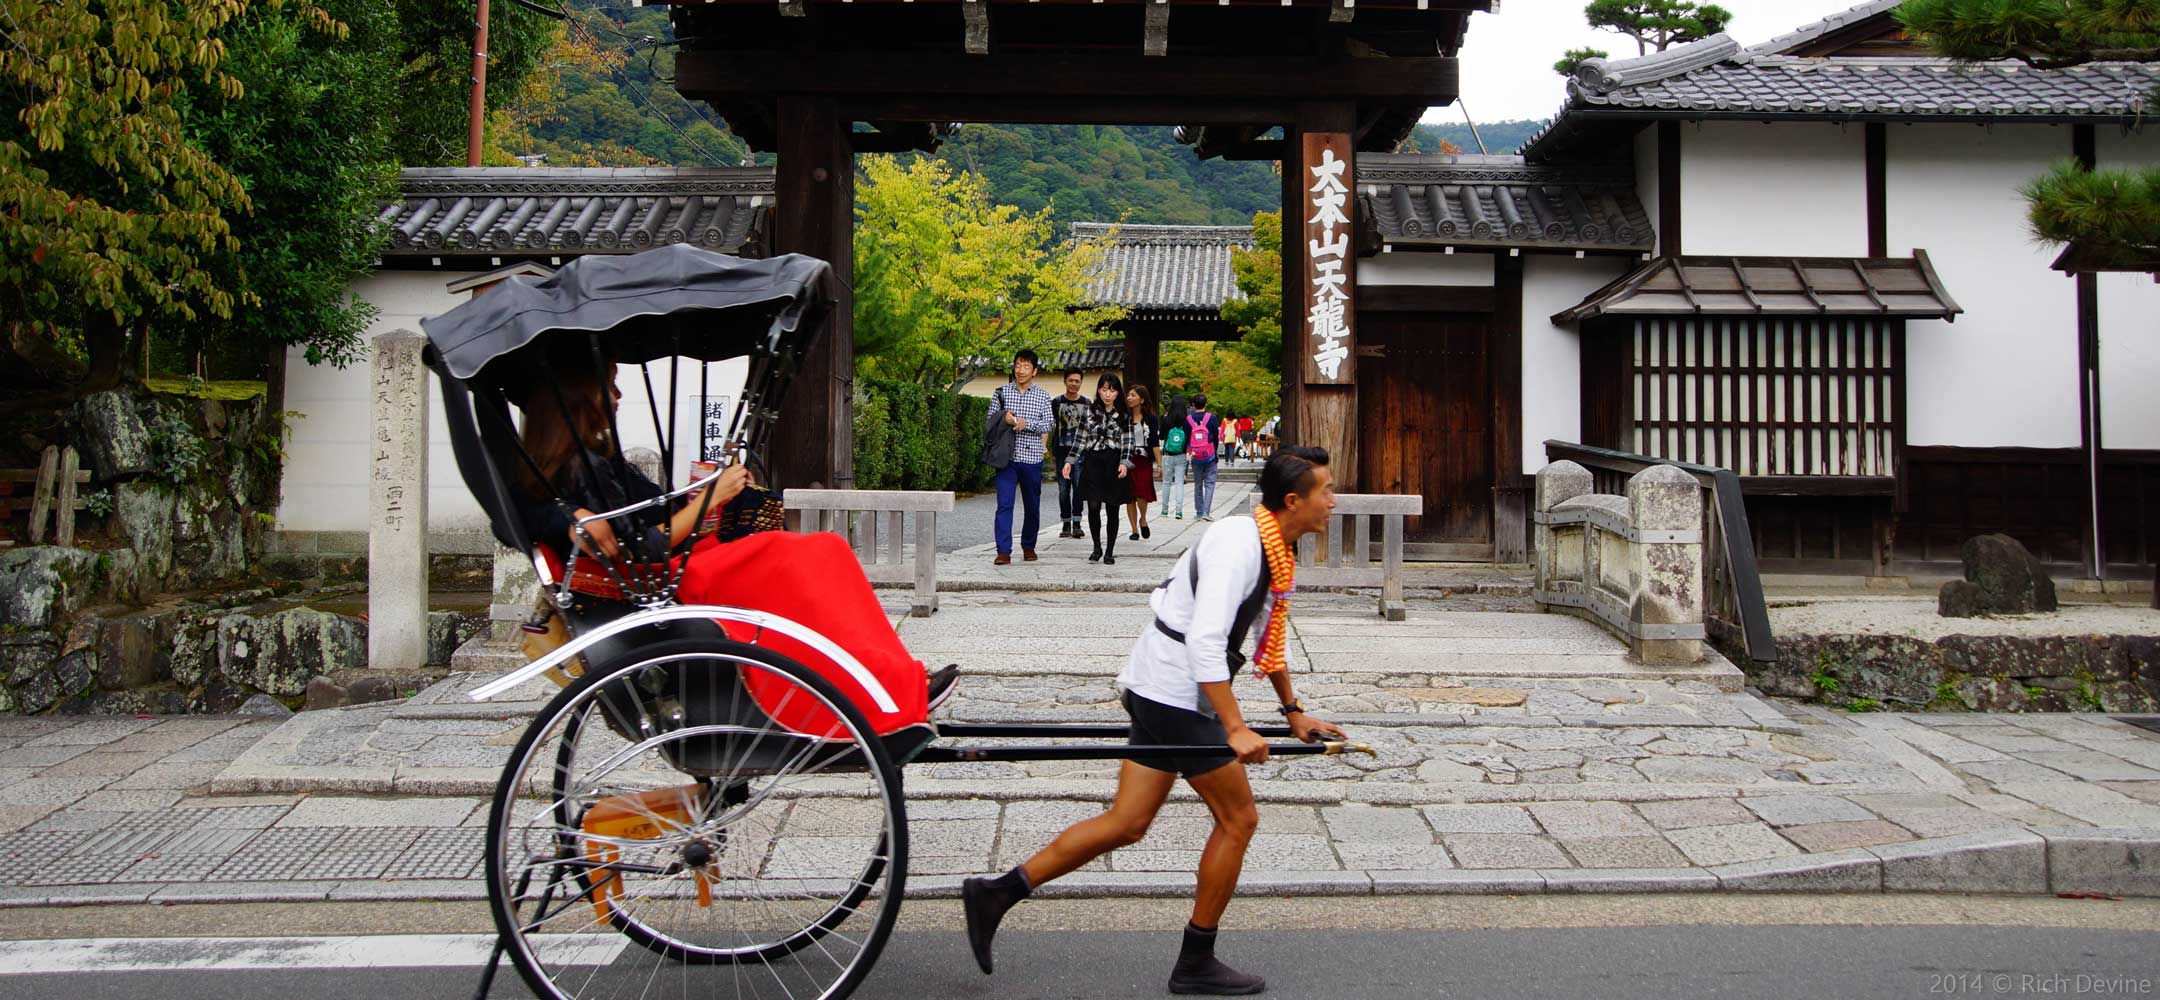 Arashiyama rickshaw - Experience Japan | Inside Japan Tours